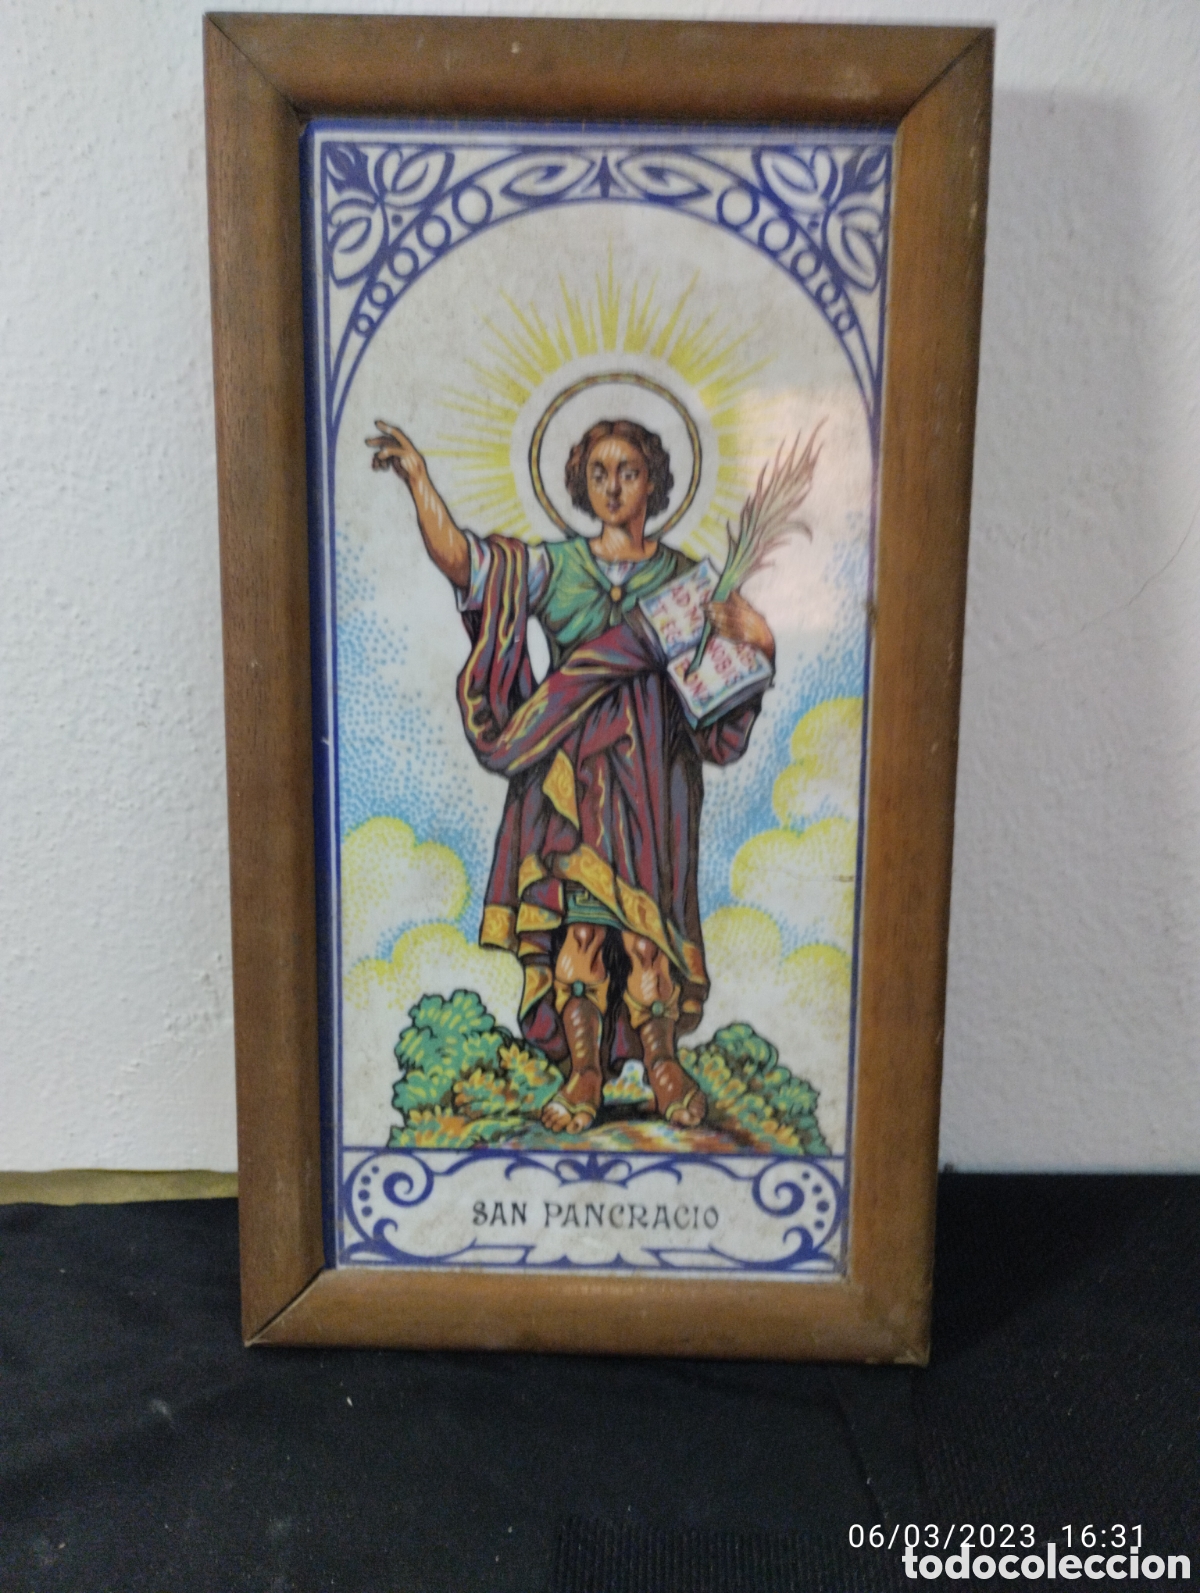 San Pancracio en artesania Española pintado a mano en 14cm.